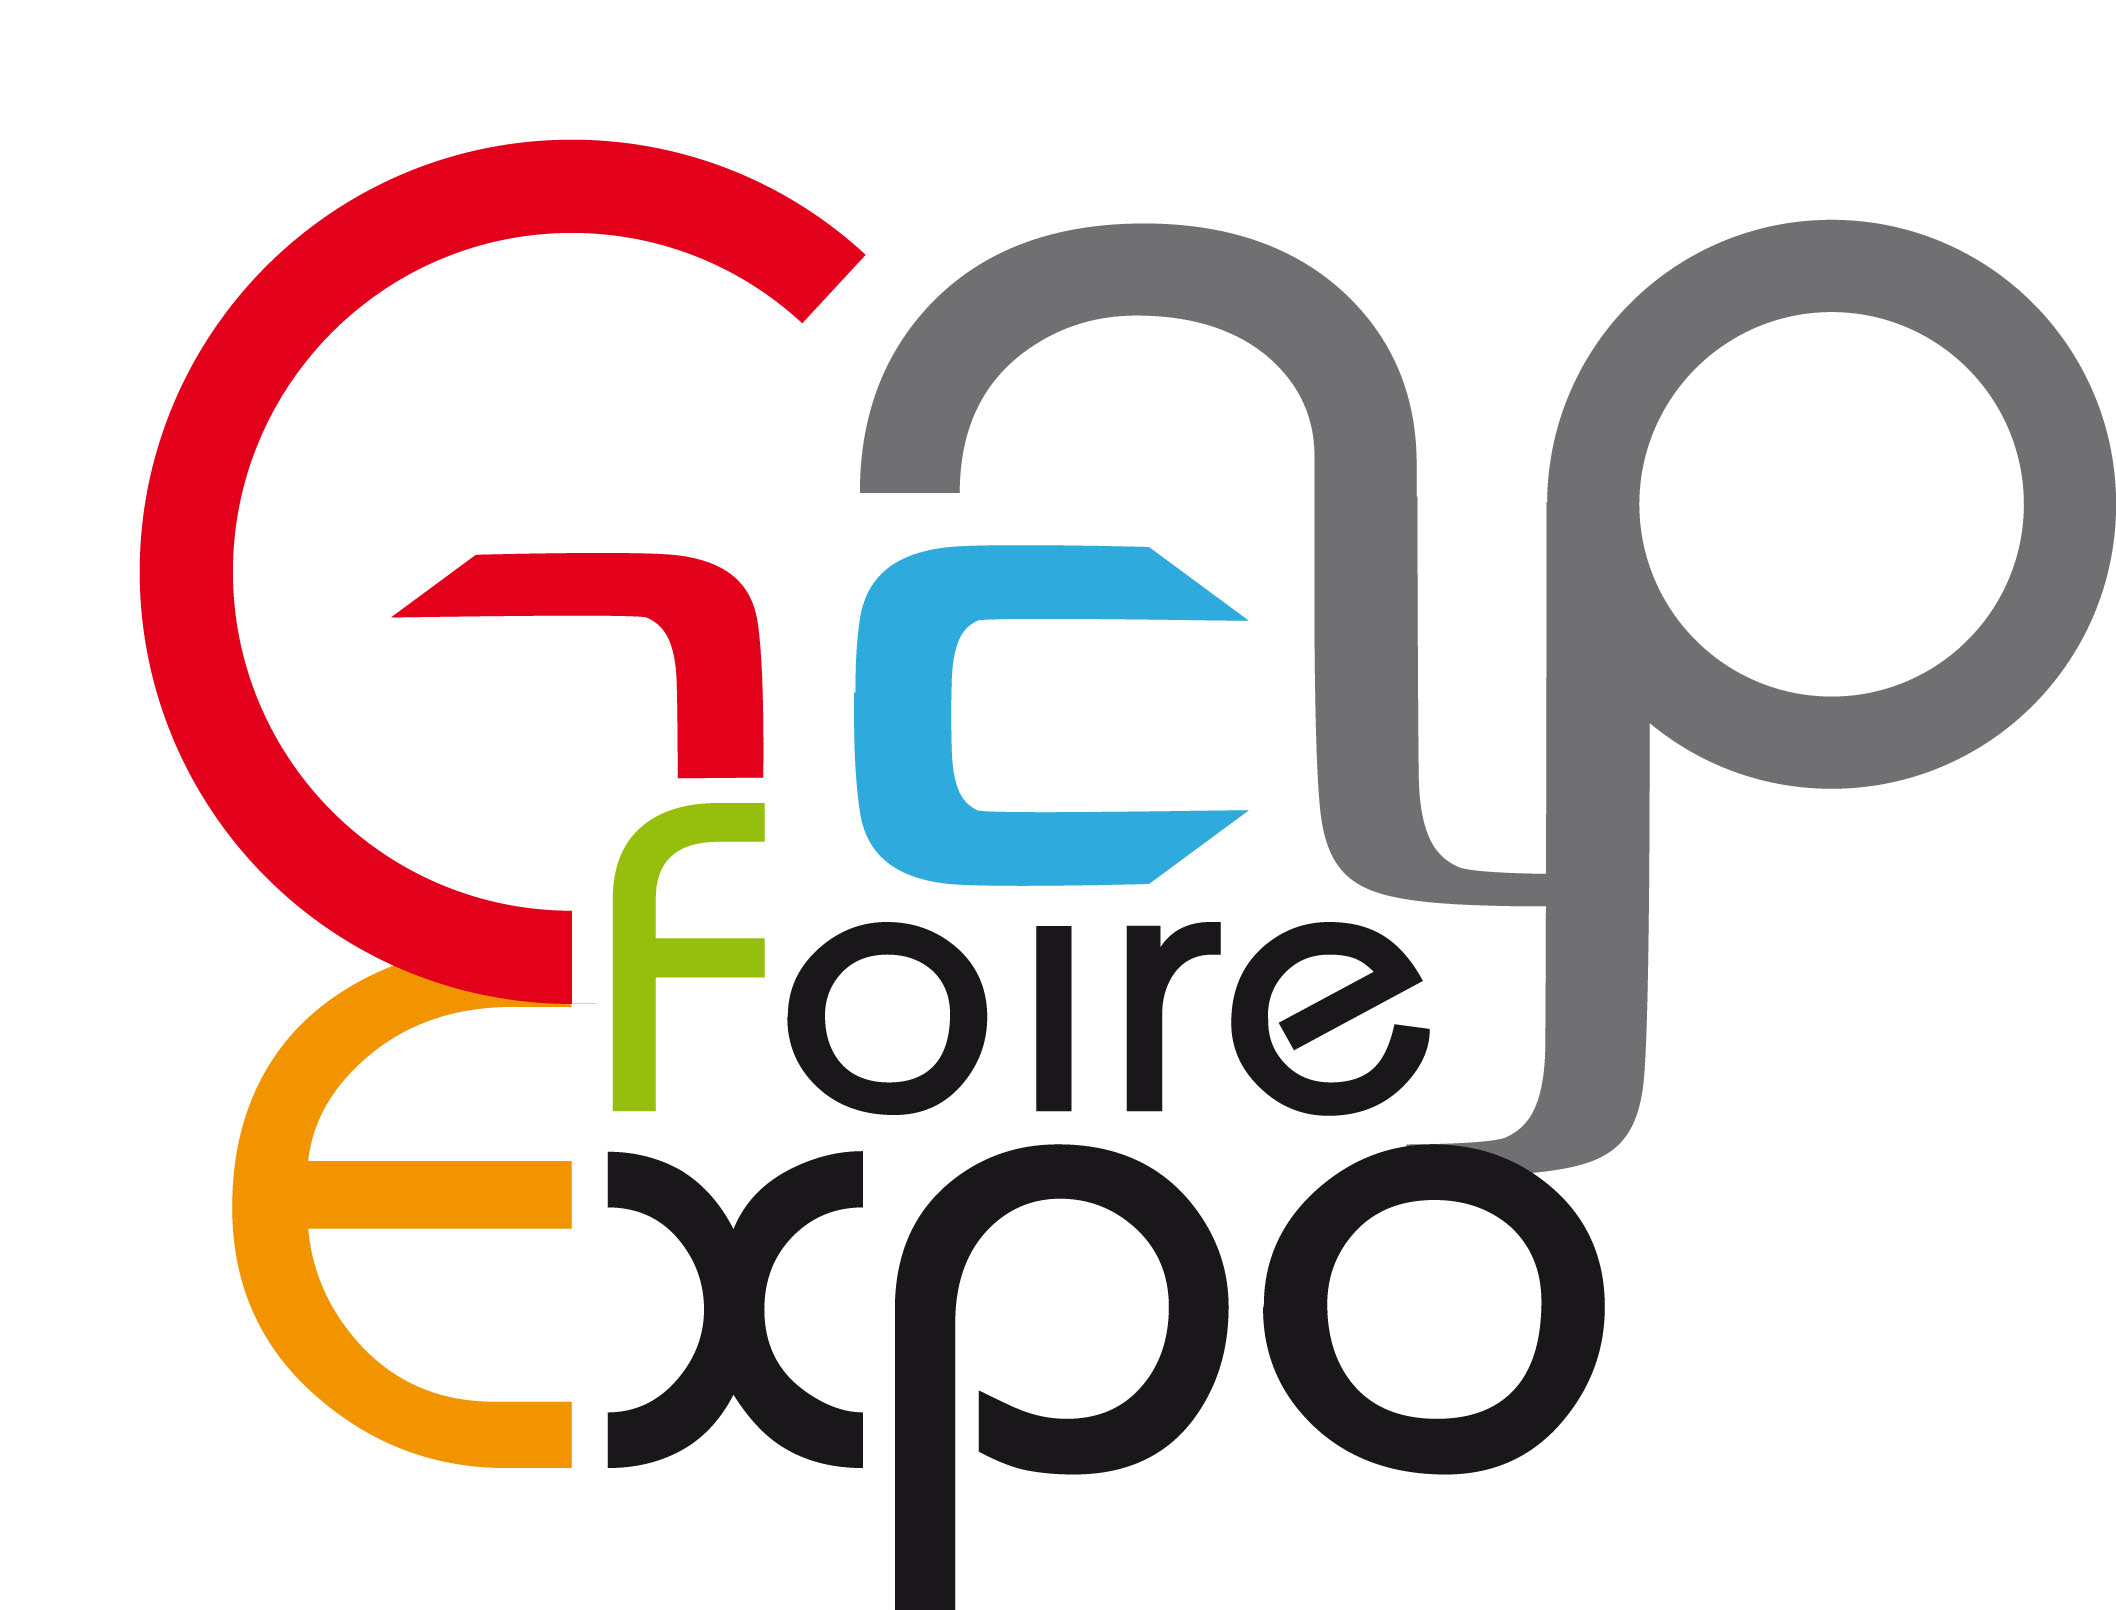 Gap Foire Expo